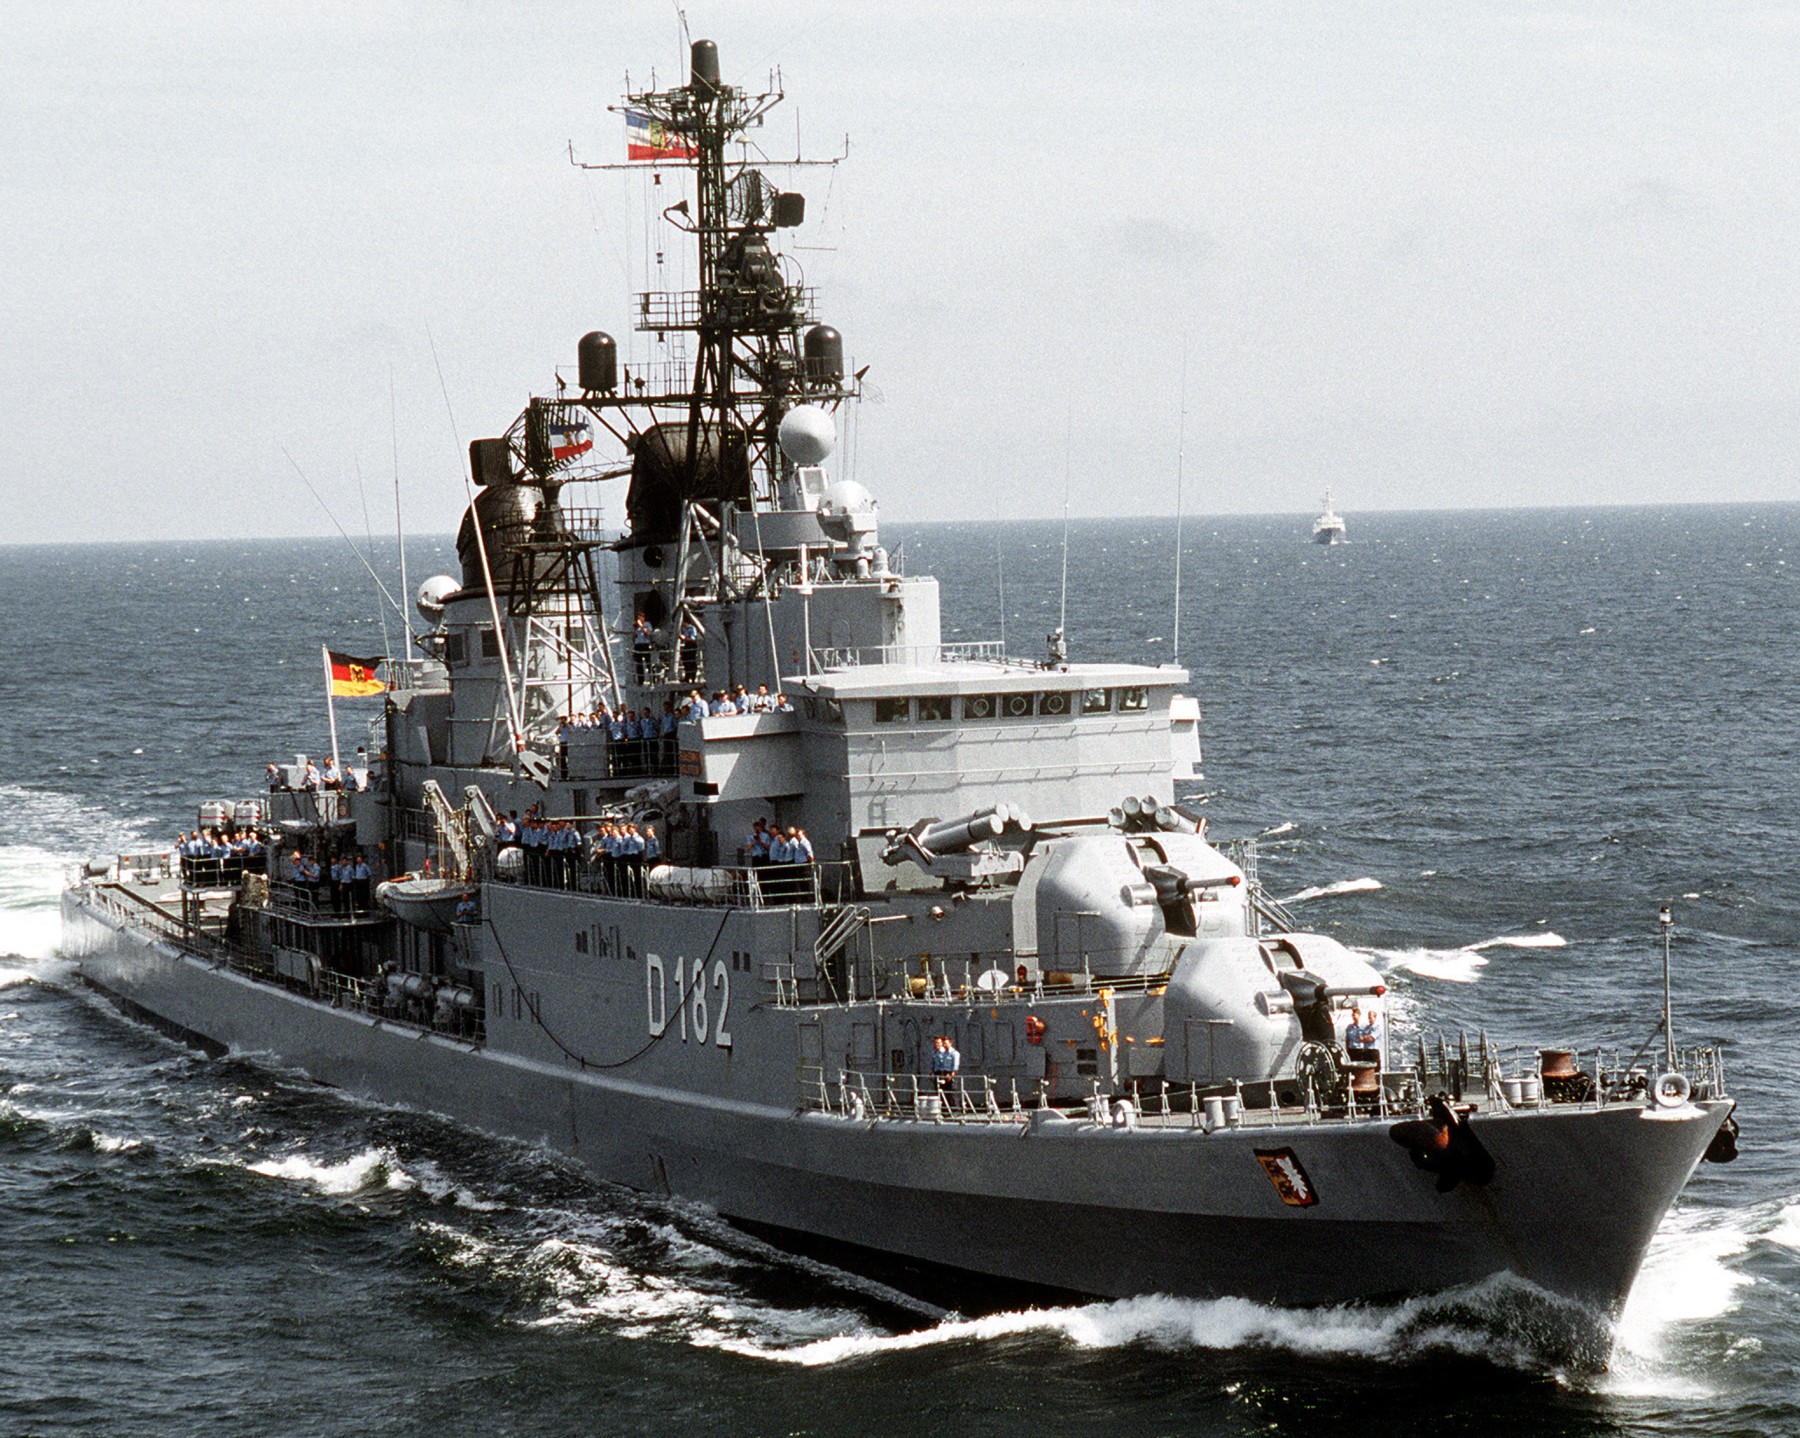 d-182 fgs schleswig-holstein type 101a hamburg class destroyer german navy 18